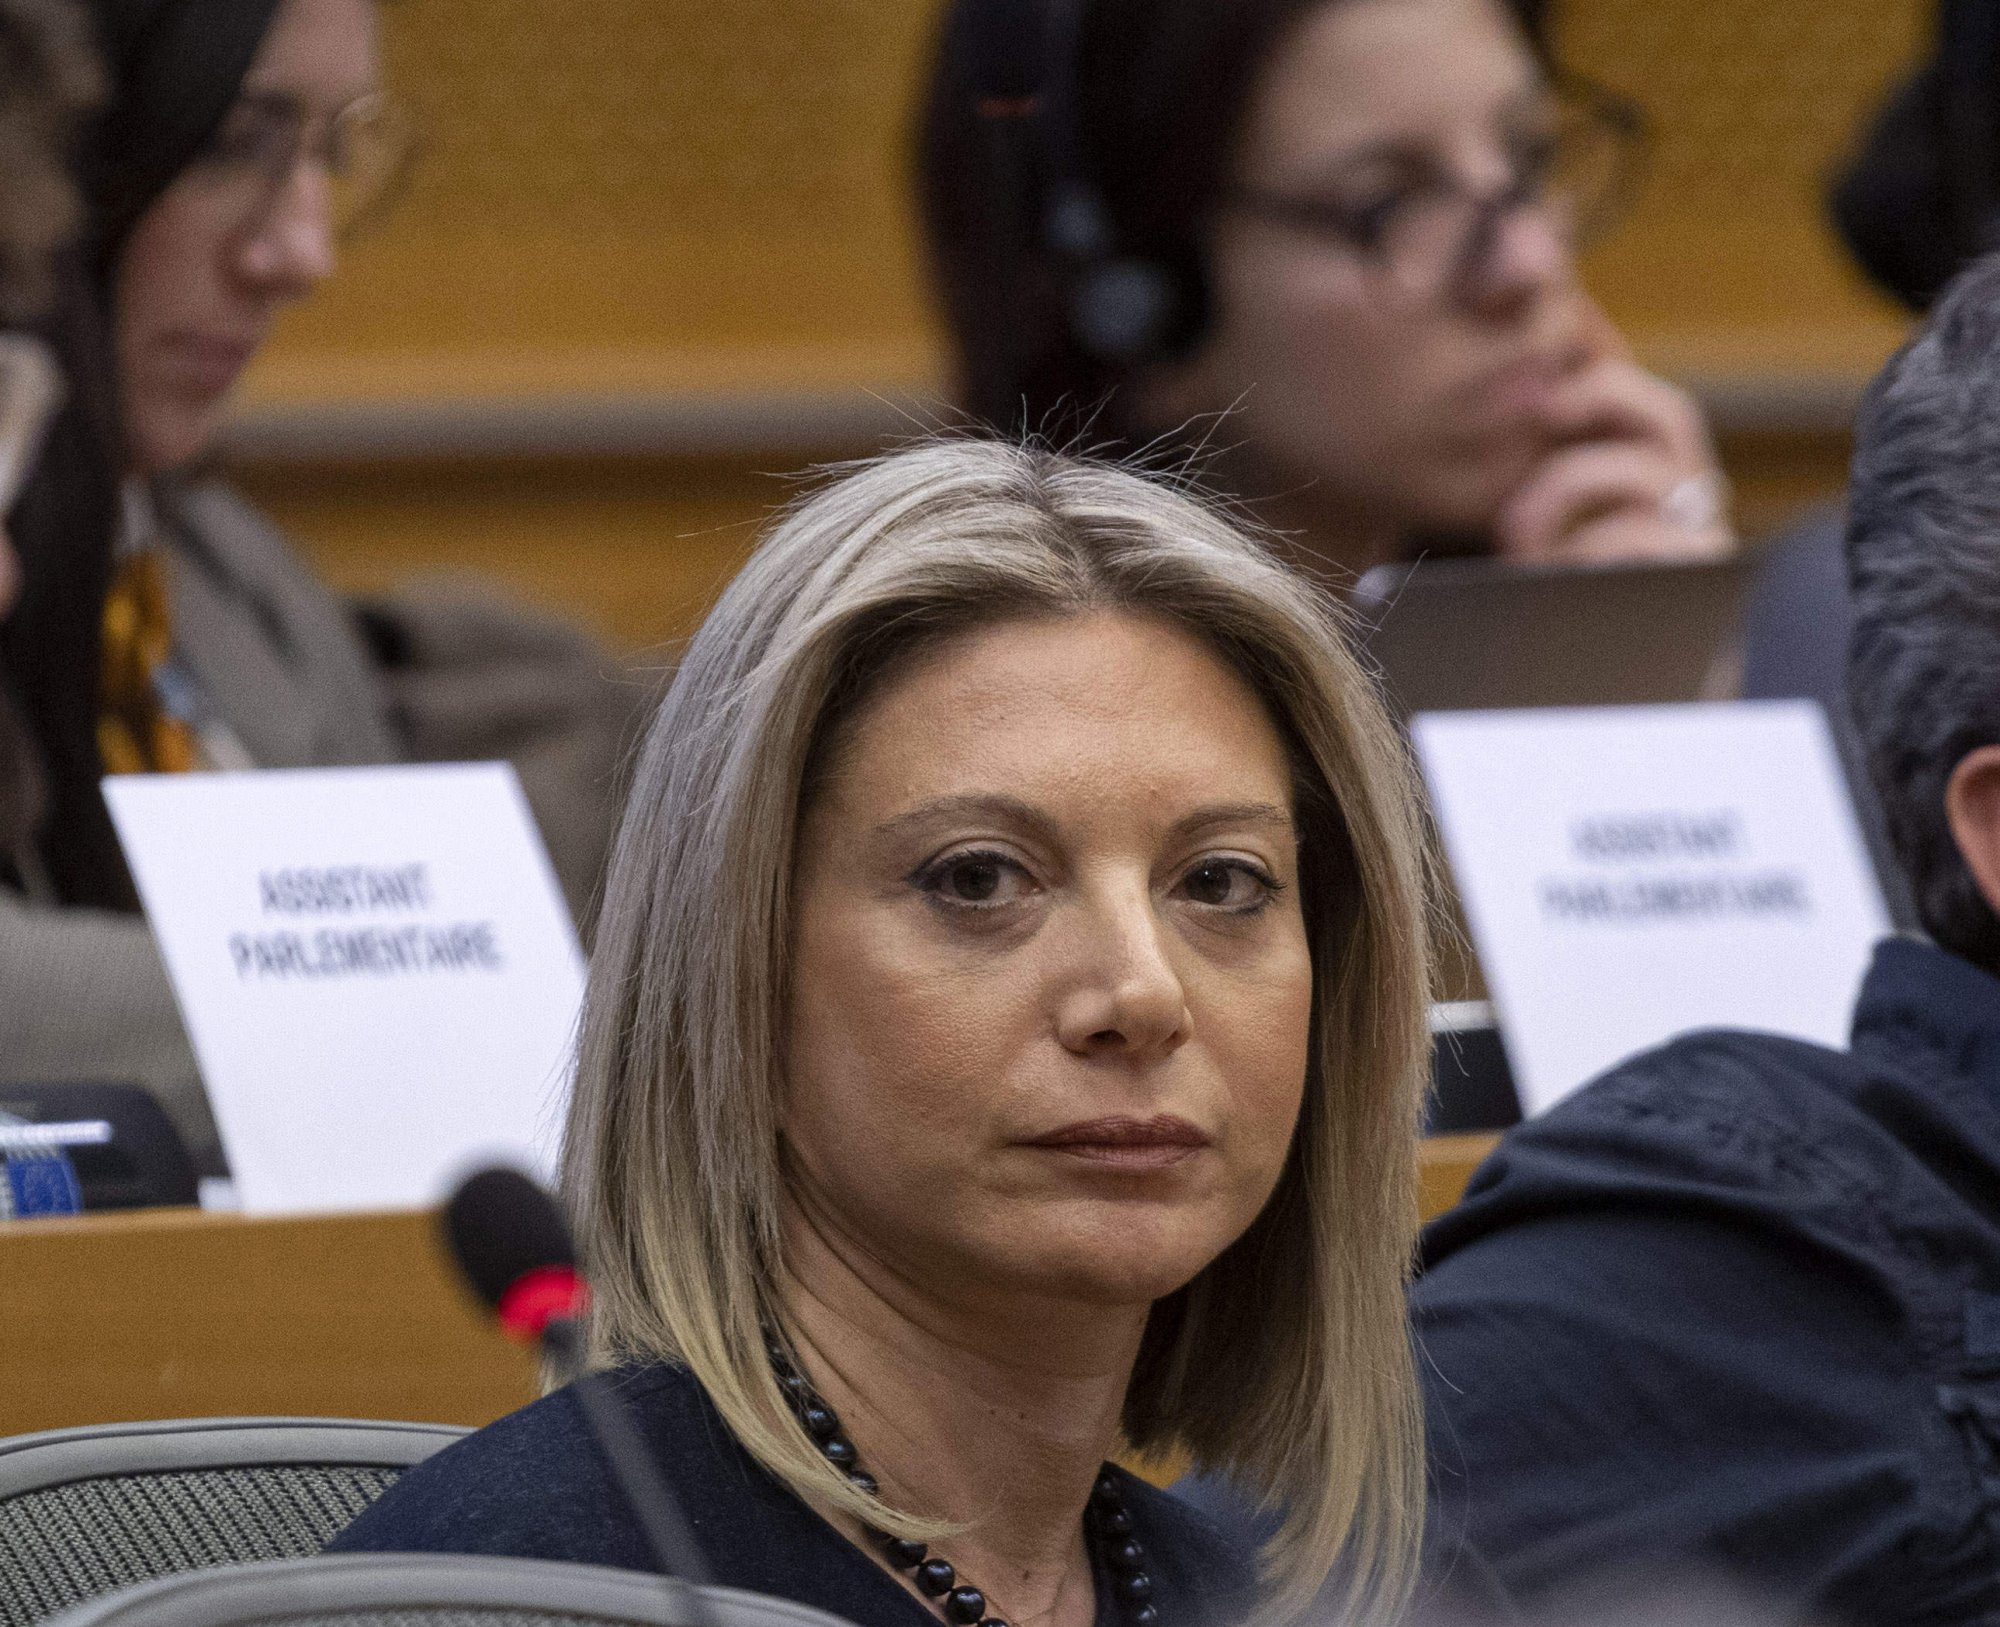 Μ. Καρυστιανού στο Ευρωκοινοβούλιο: Χρόνια η παθογένεια του πολιτικού συστήματος που υπονομεύει τις ζωές μας